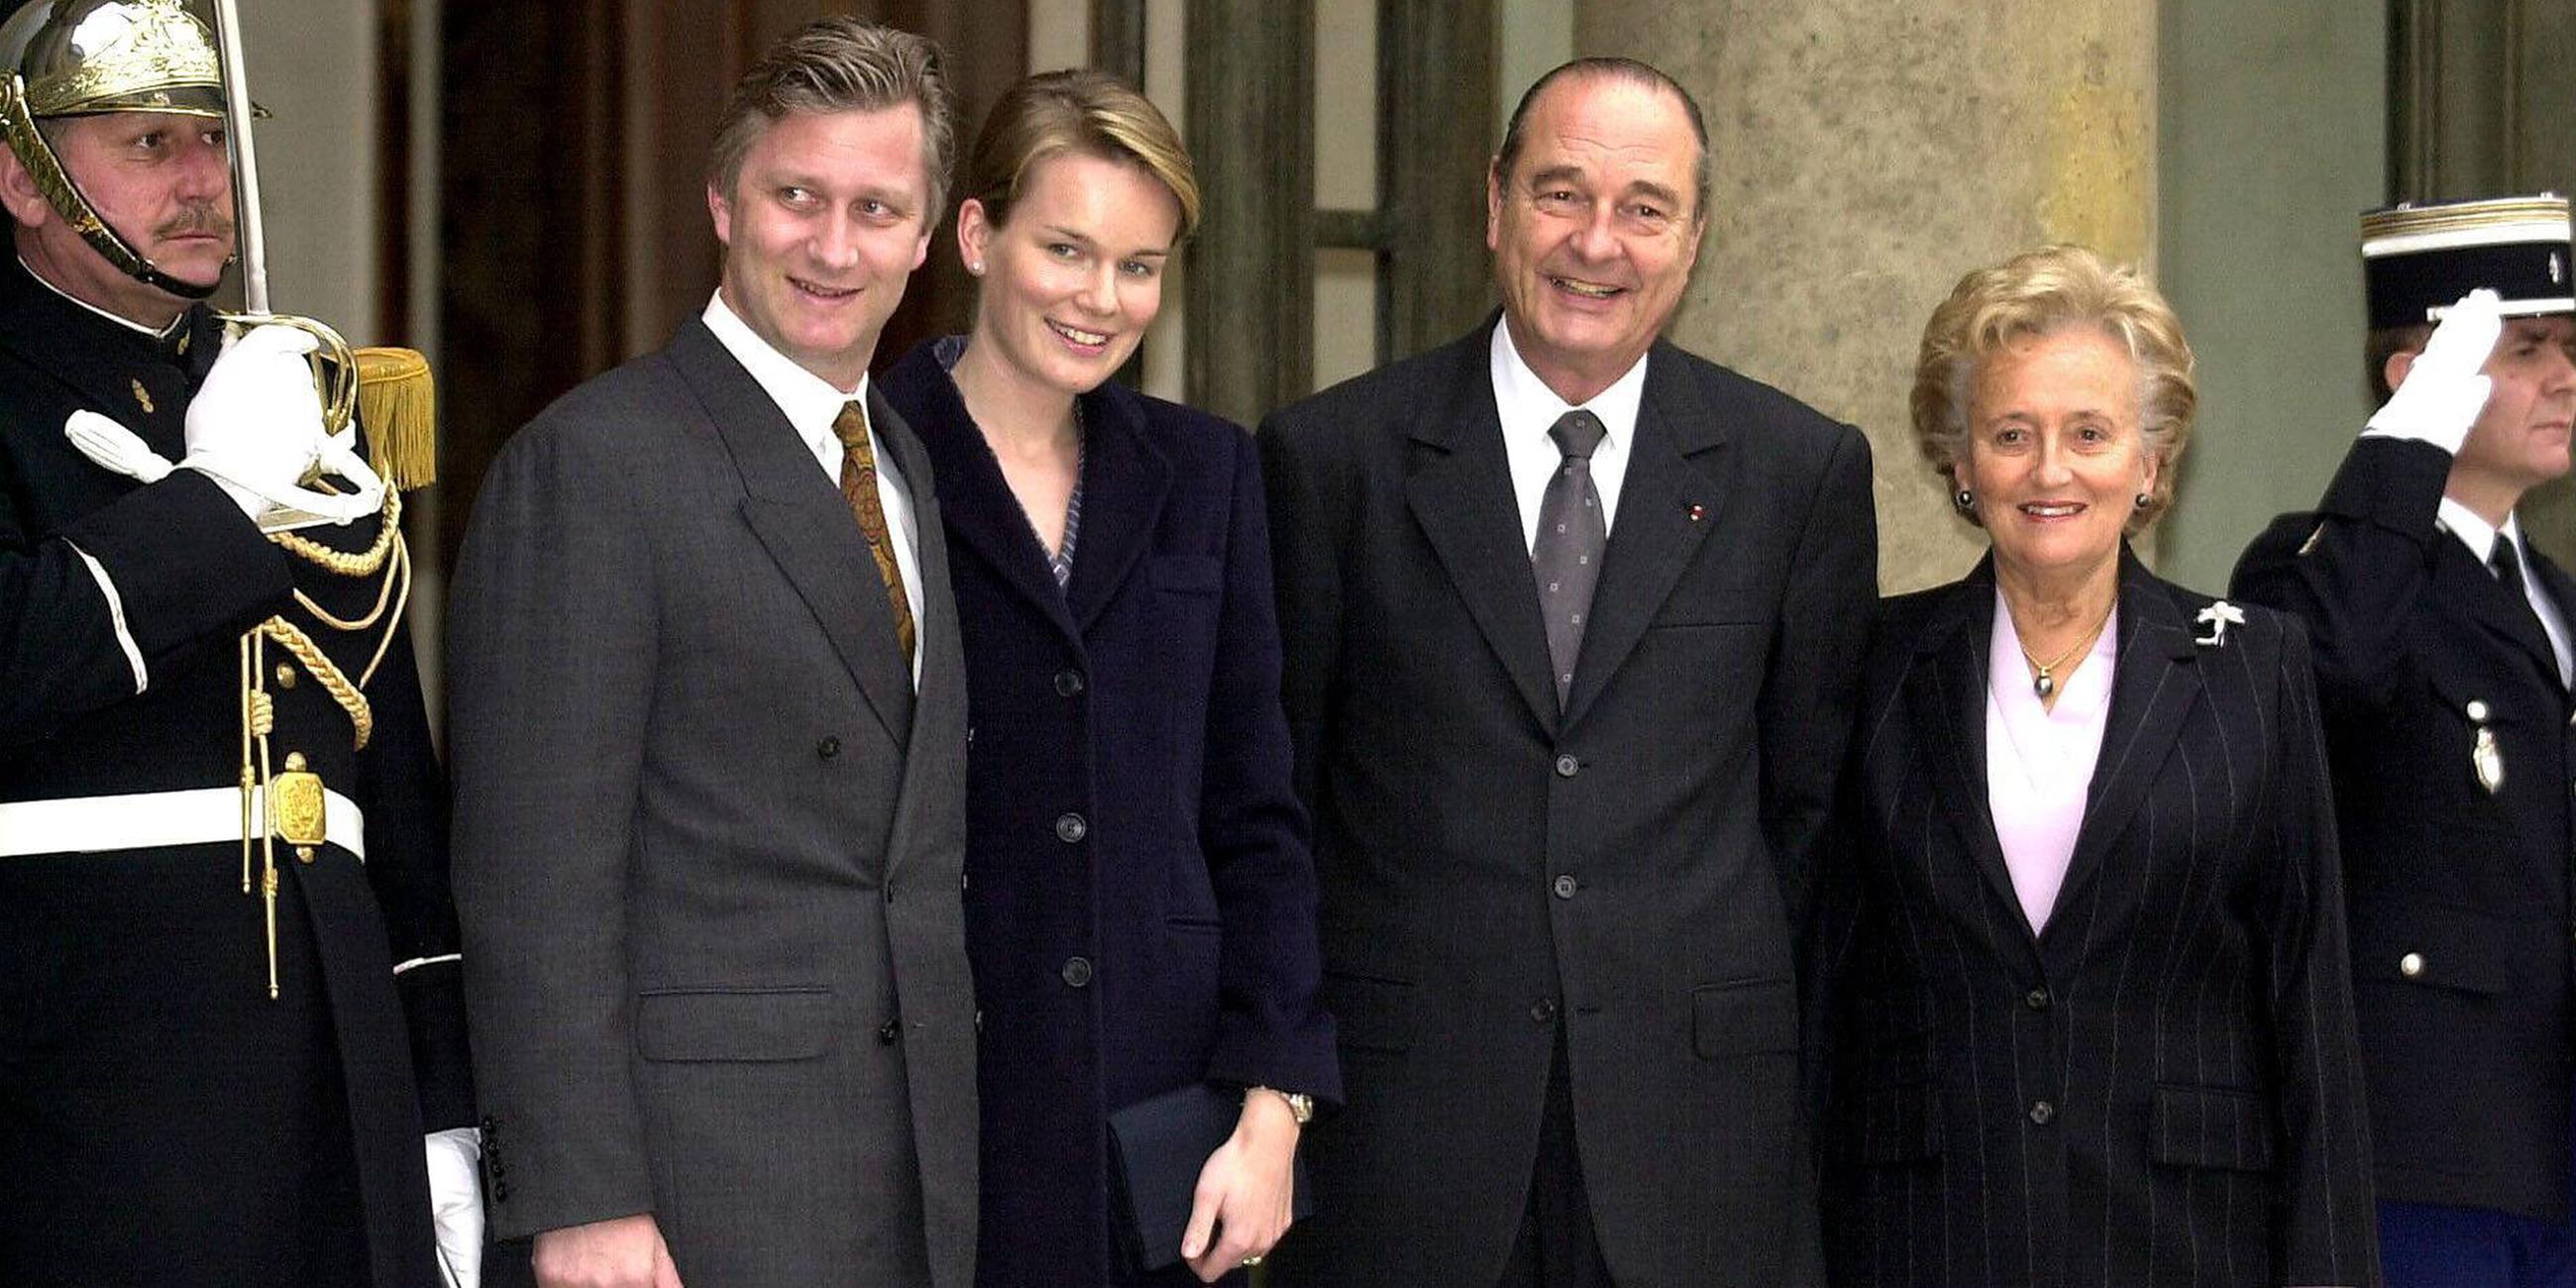 Archiv: Jacques Chirac und Prinz Philipp II. sowie Prinzessin Mathilde III. von Belgien am 26.03.2001 in Paris